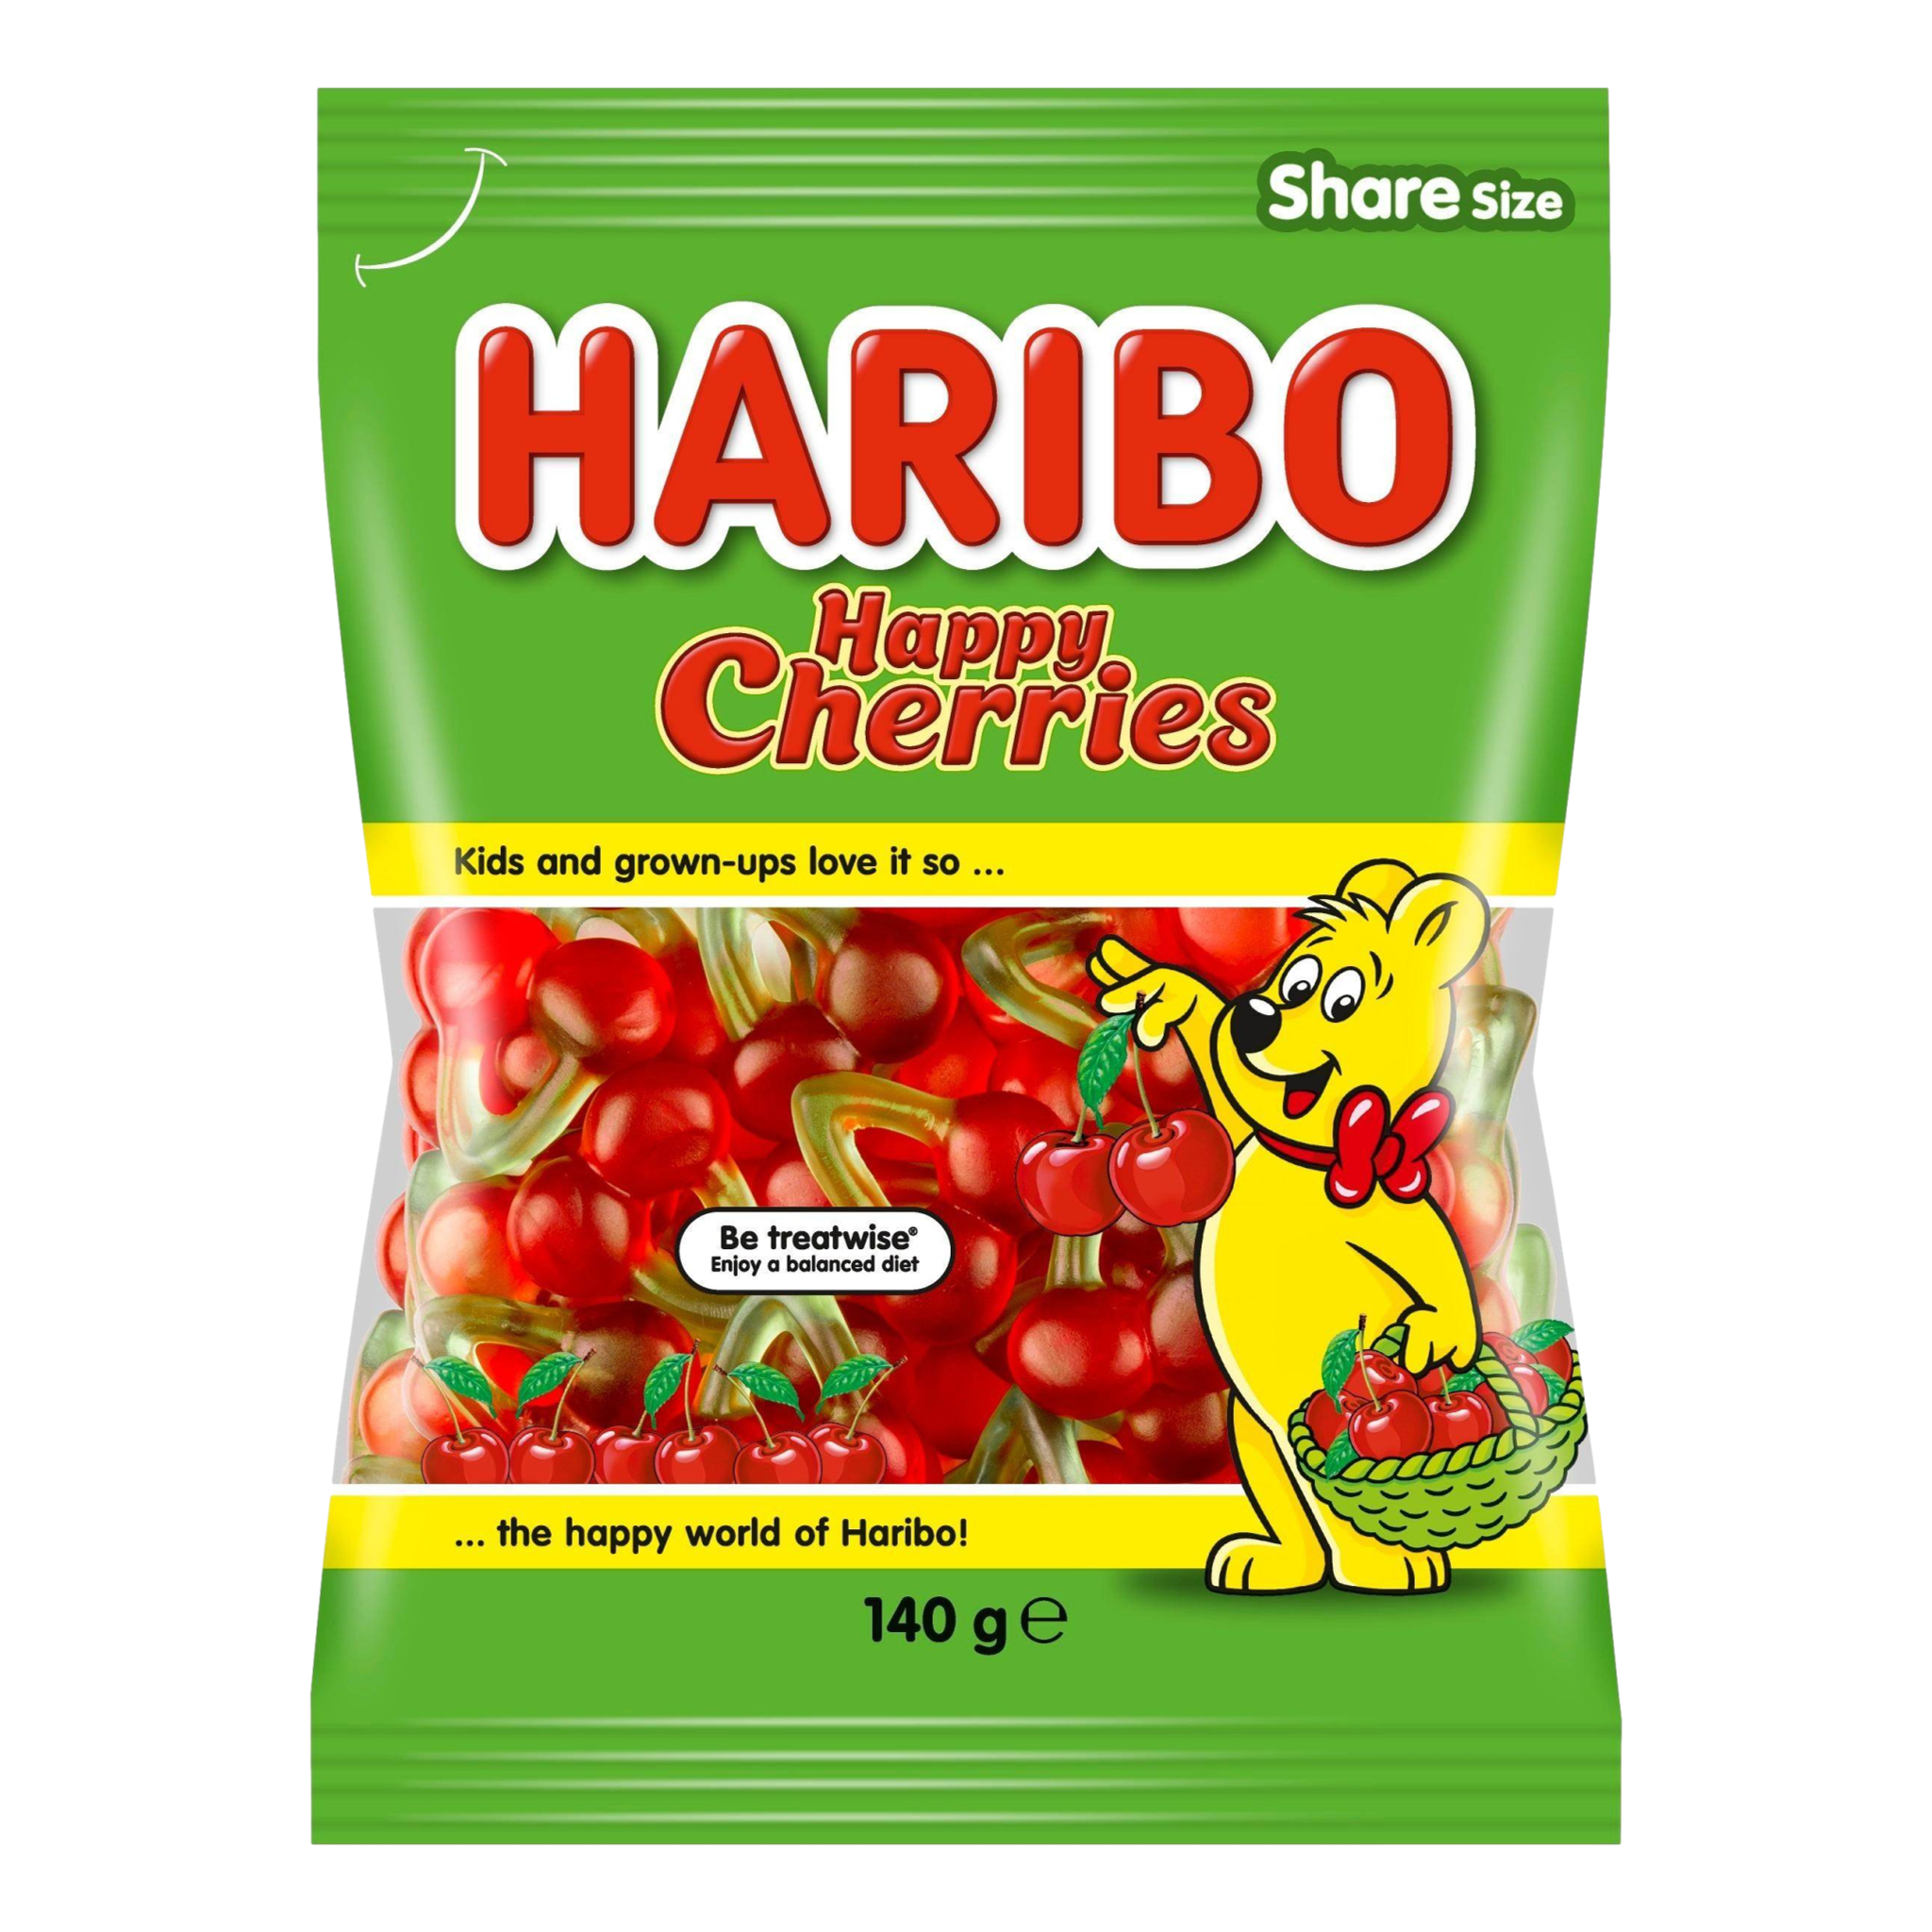 Haribo Happy Cherries 5oz Bag